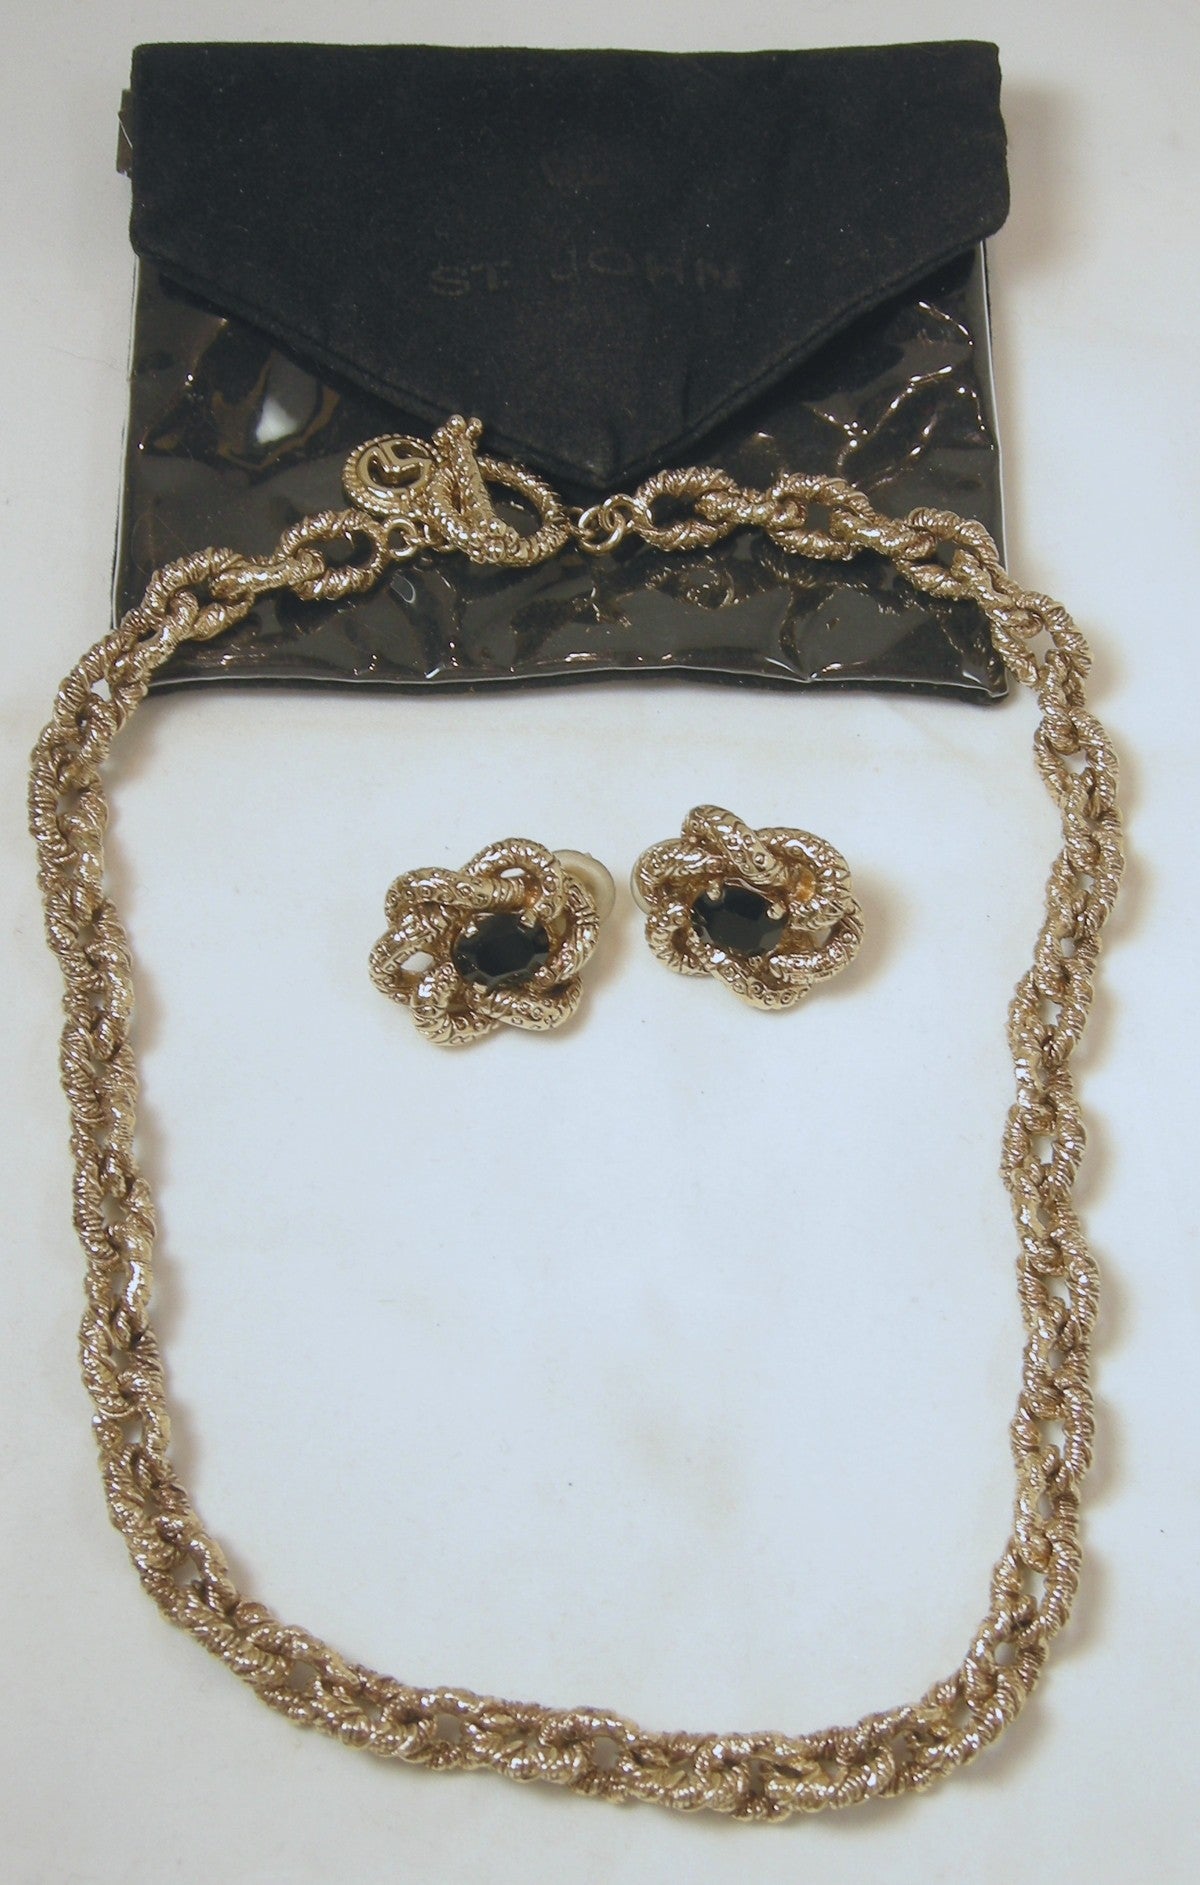 Vintage ST. JOHN Chain & Medallion Belt or Necklace